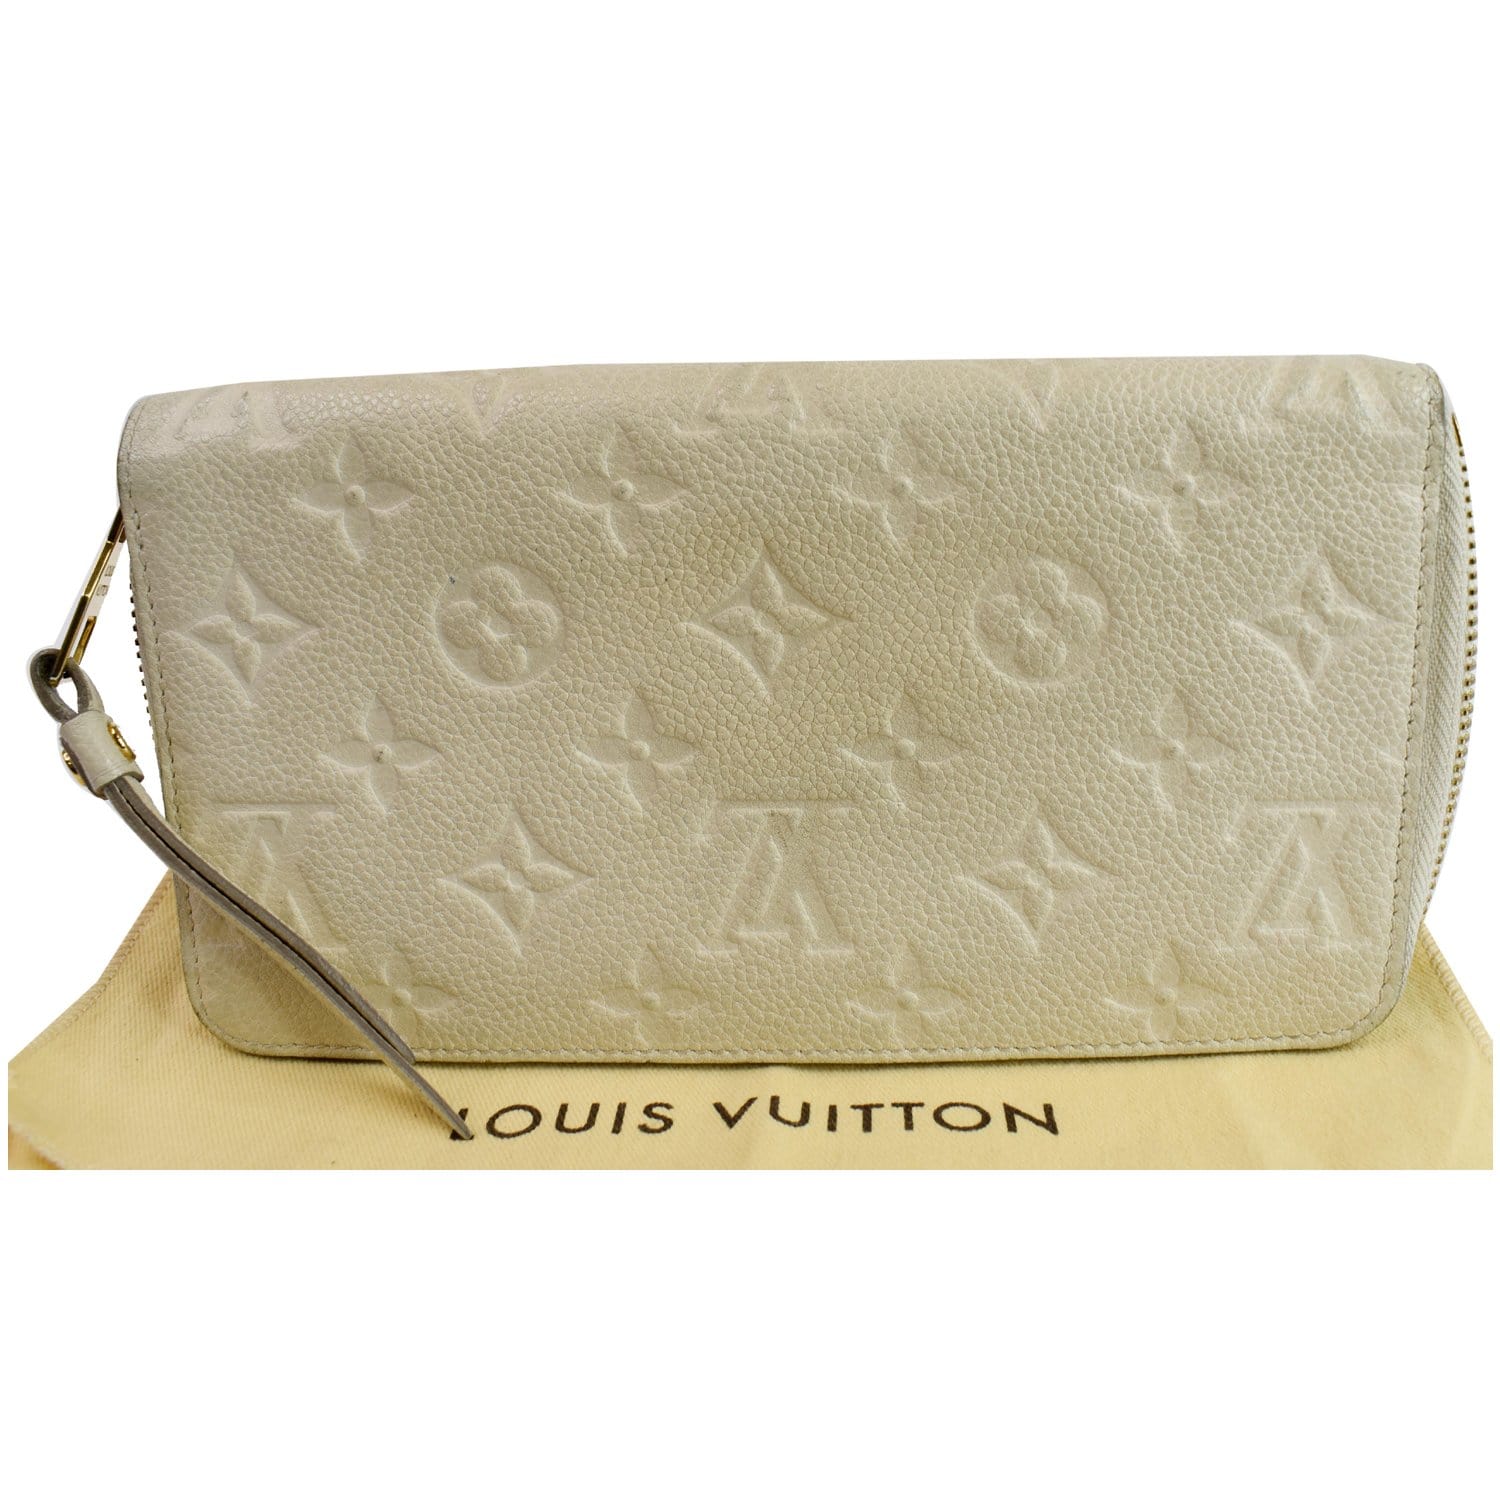 Louis Vuitton 100% Cotton Wallets for Women